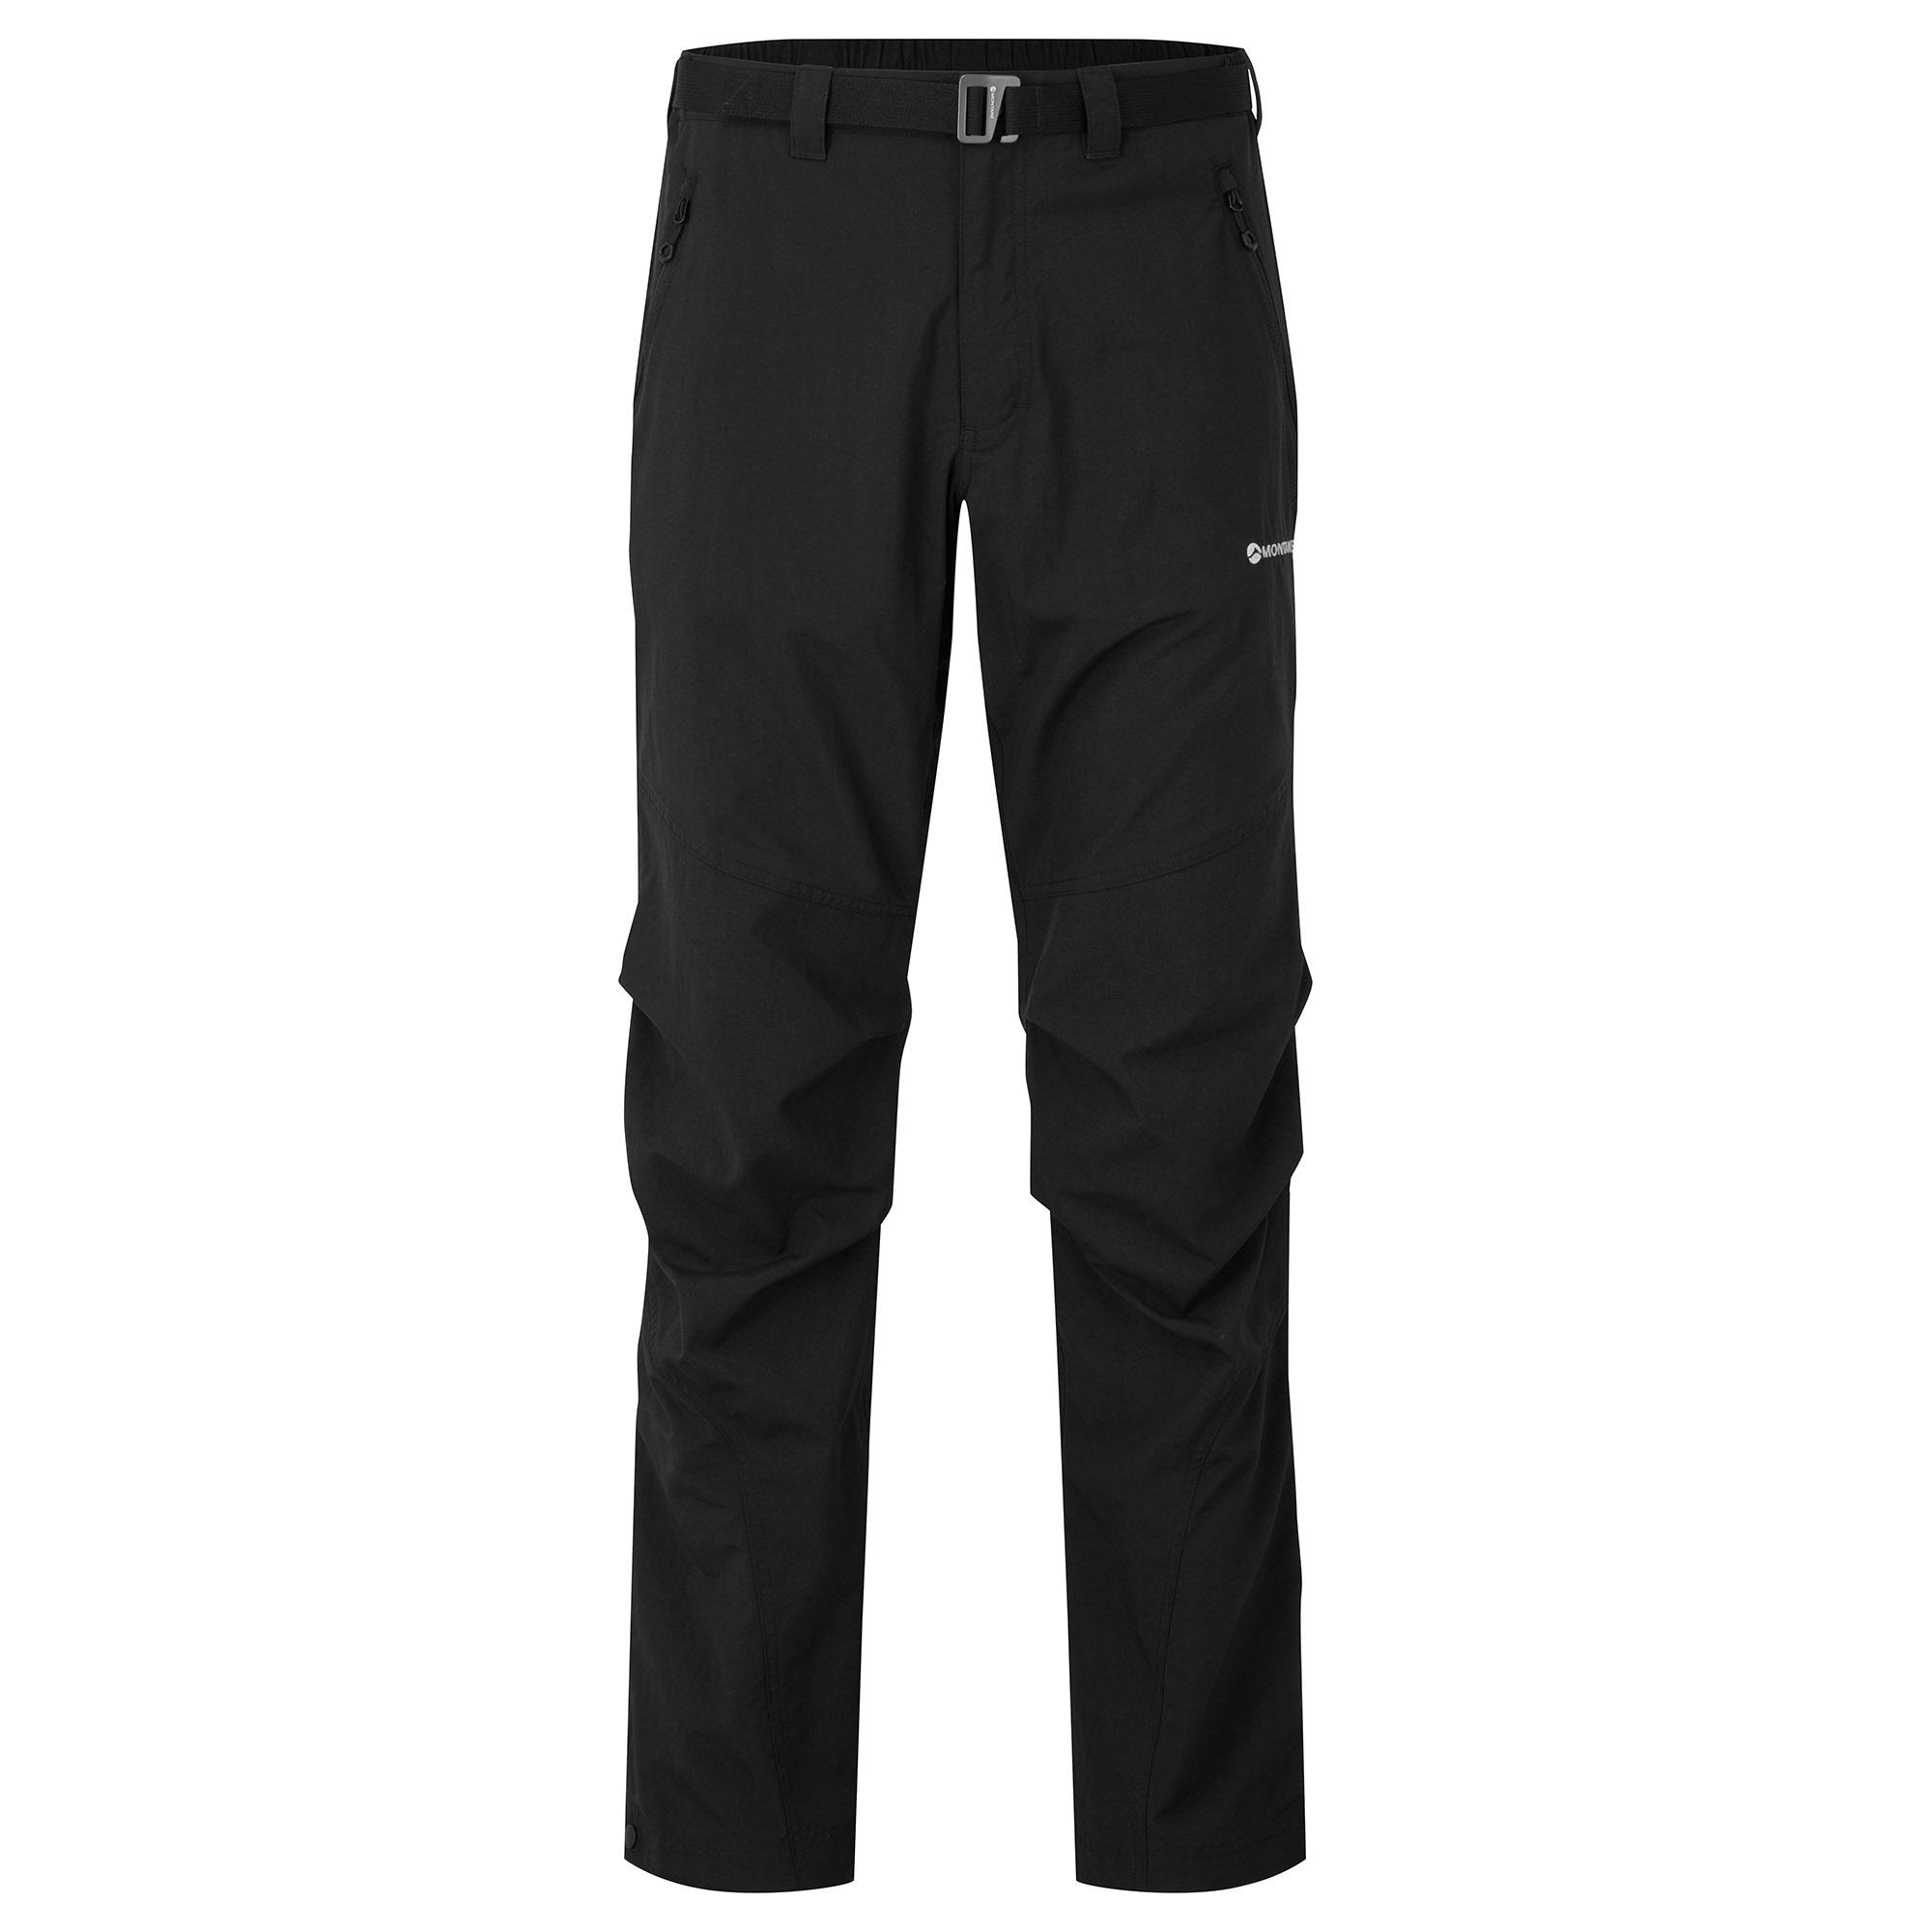 Montane pánské softshellové kalhoty Terra Pants - Zkrácené Nohavice Barva: black, Velikost: 34